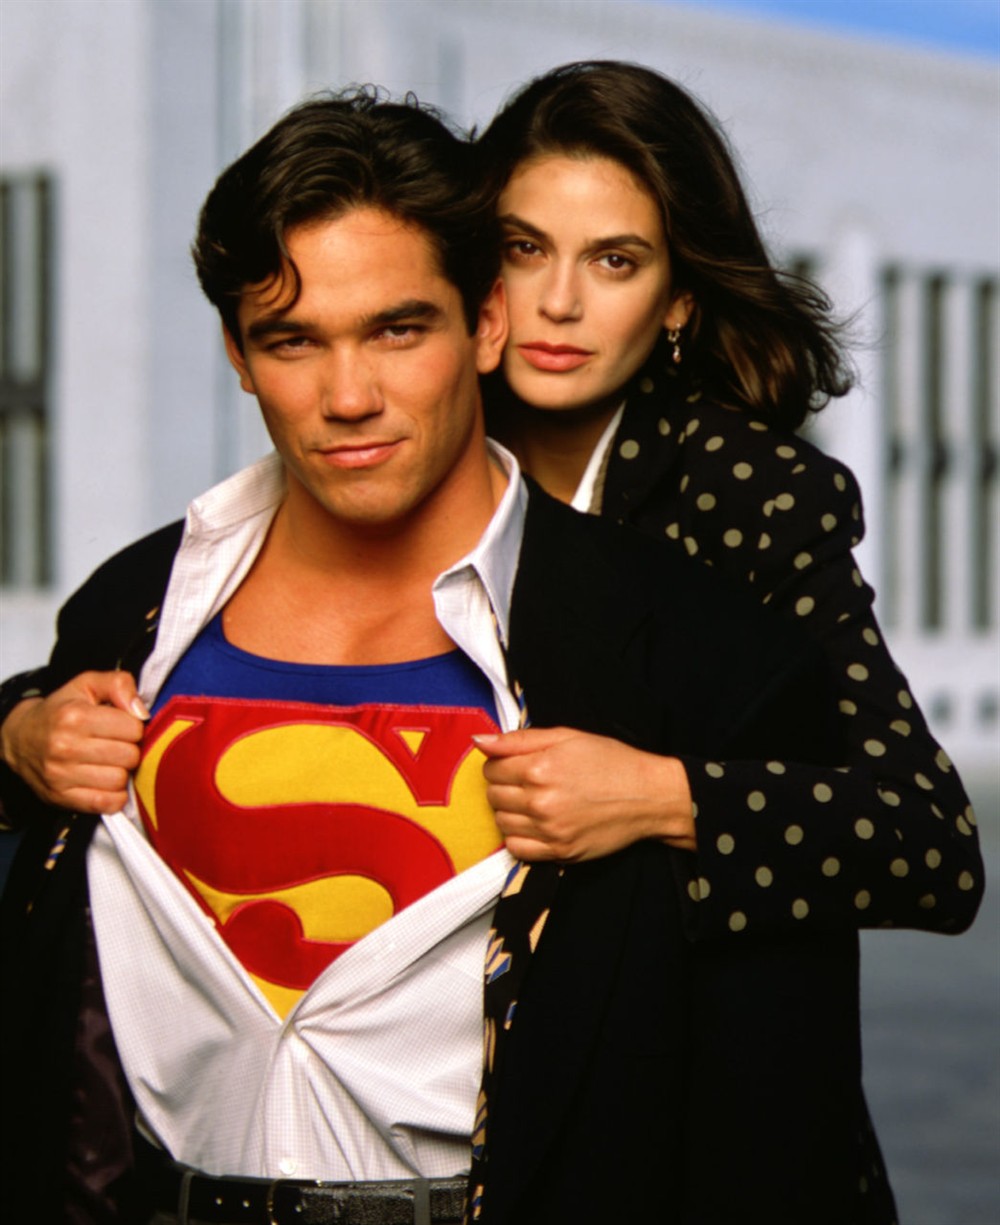 超人和露易斯第二季图片